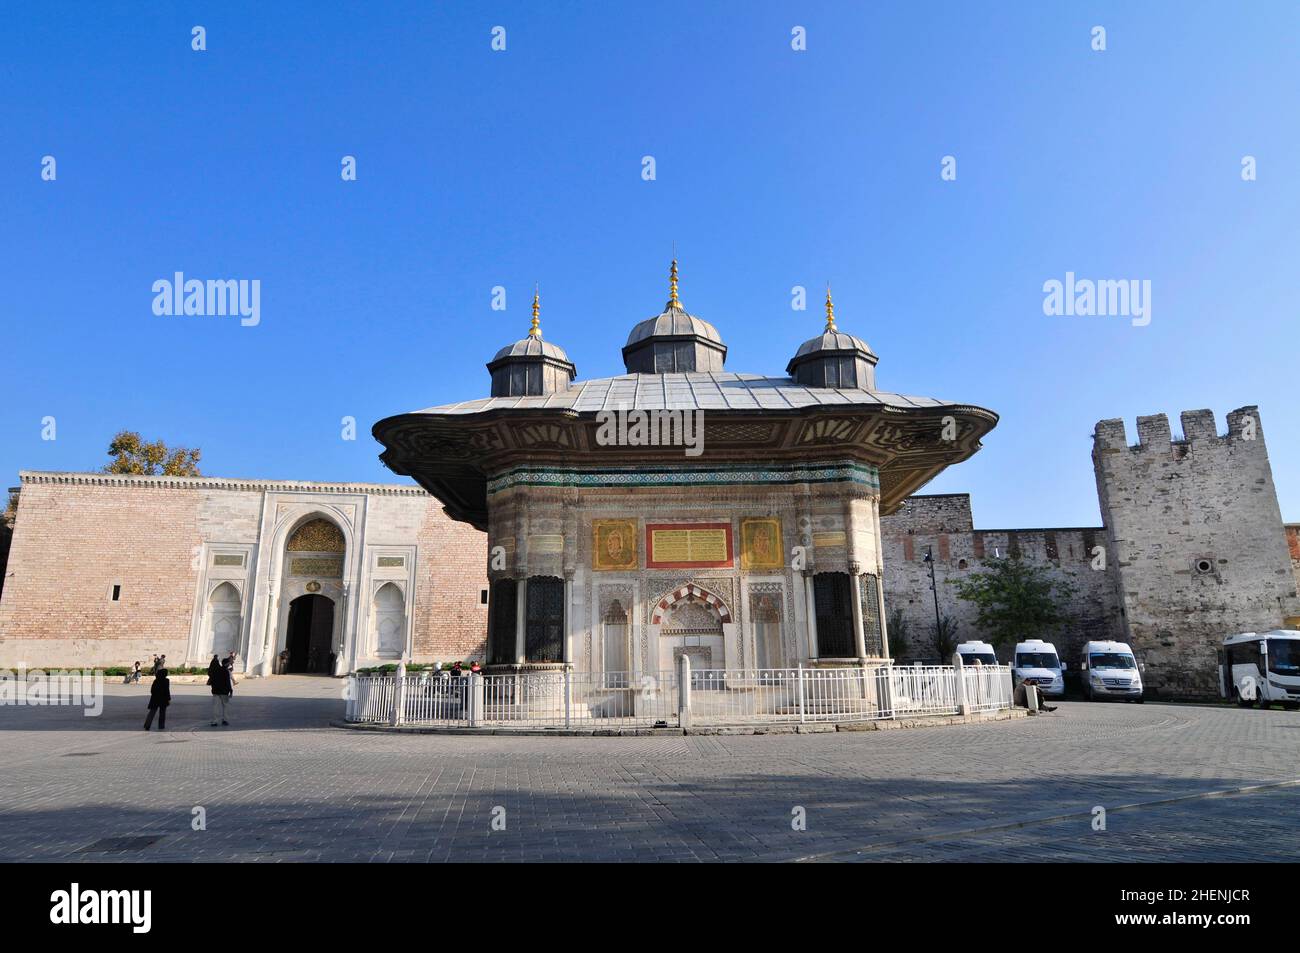 Der Brunnen Sultan Ahmed III wurde 1728 erbaut, dieser große Brunnen in einem türkischen Rokoko-Gebäude verfügt über prunkvolle Fassaden. Stockfoto